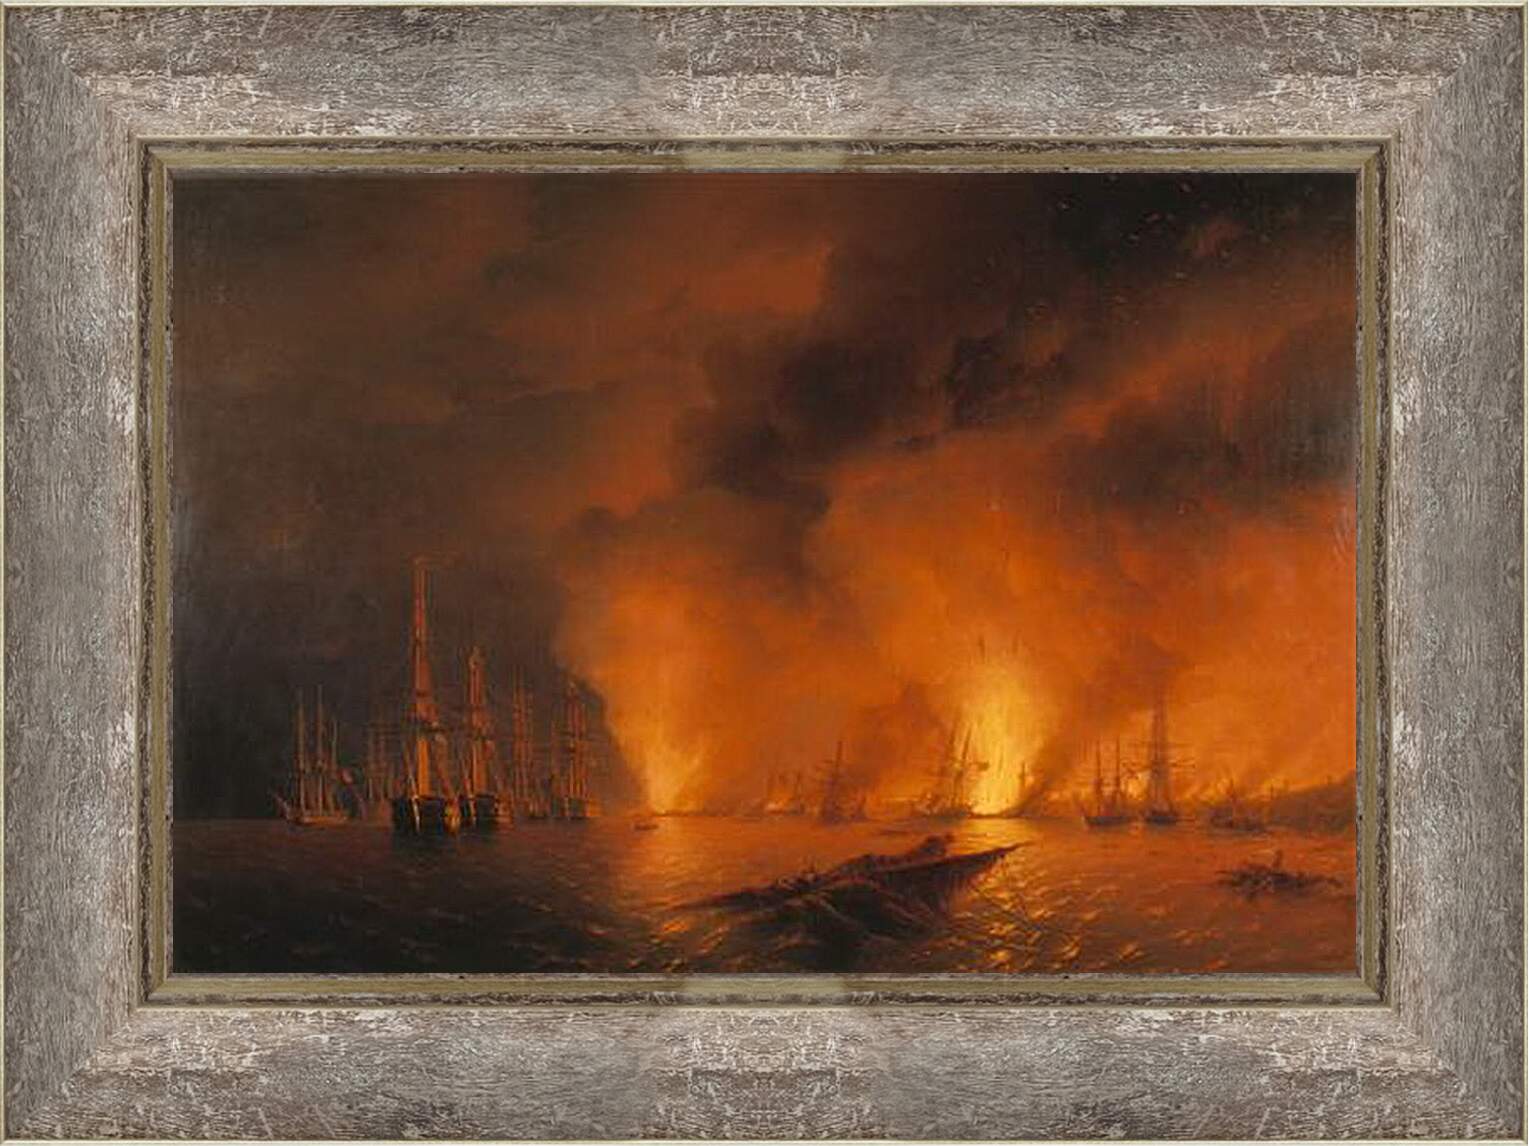 Картина в раме - Синопский бой 18 ноября 1853г. Ночь после боя. Иван Айвазовский
